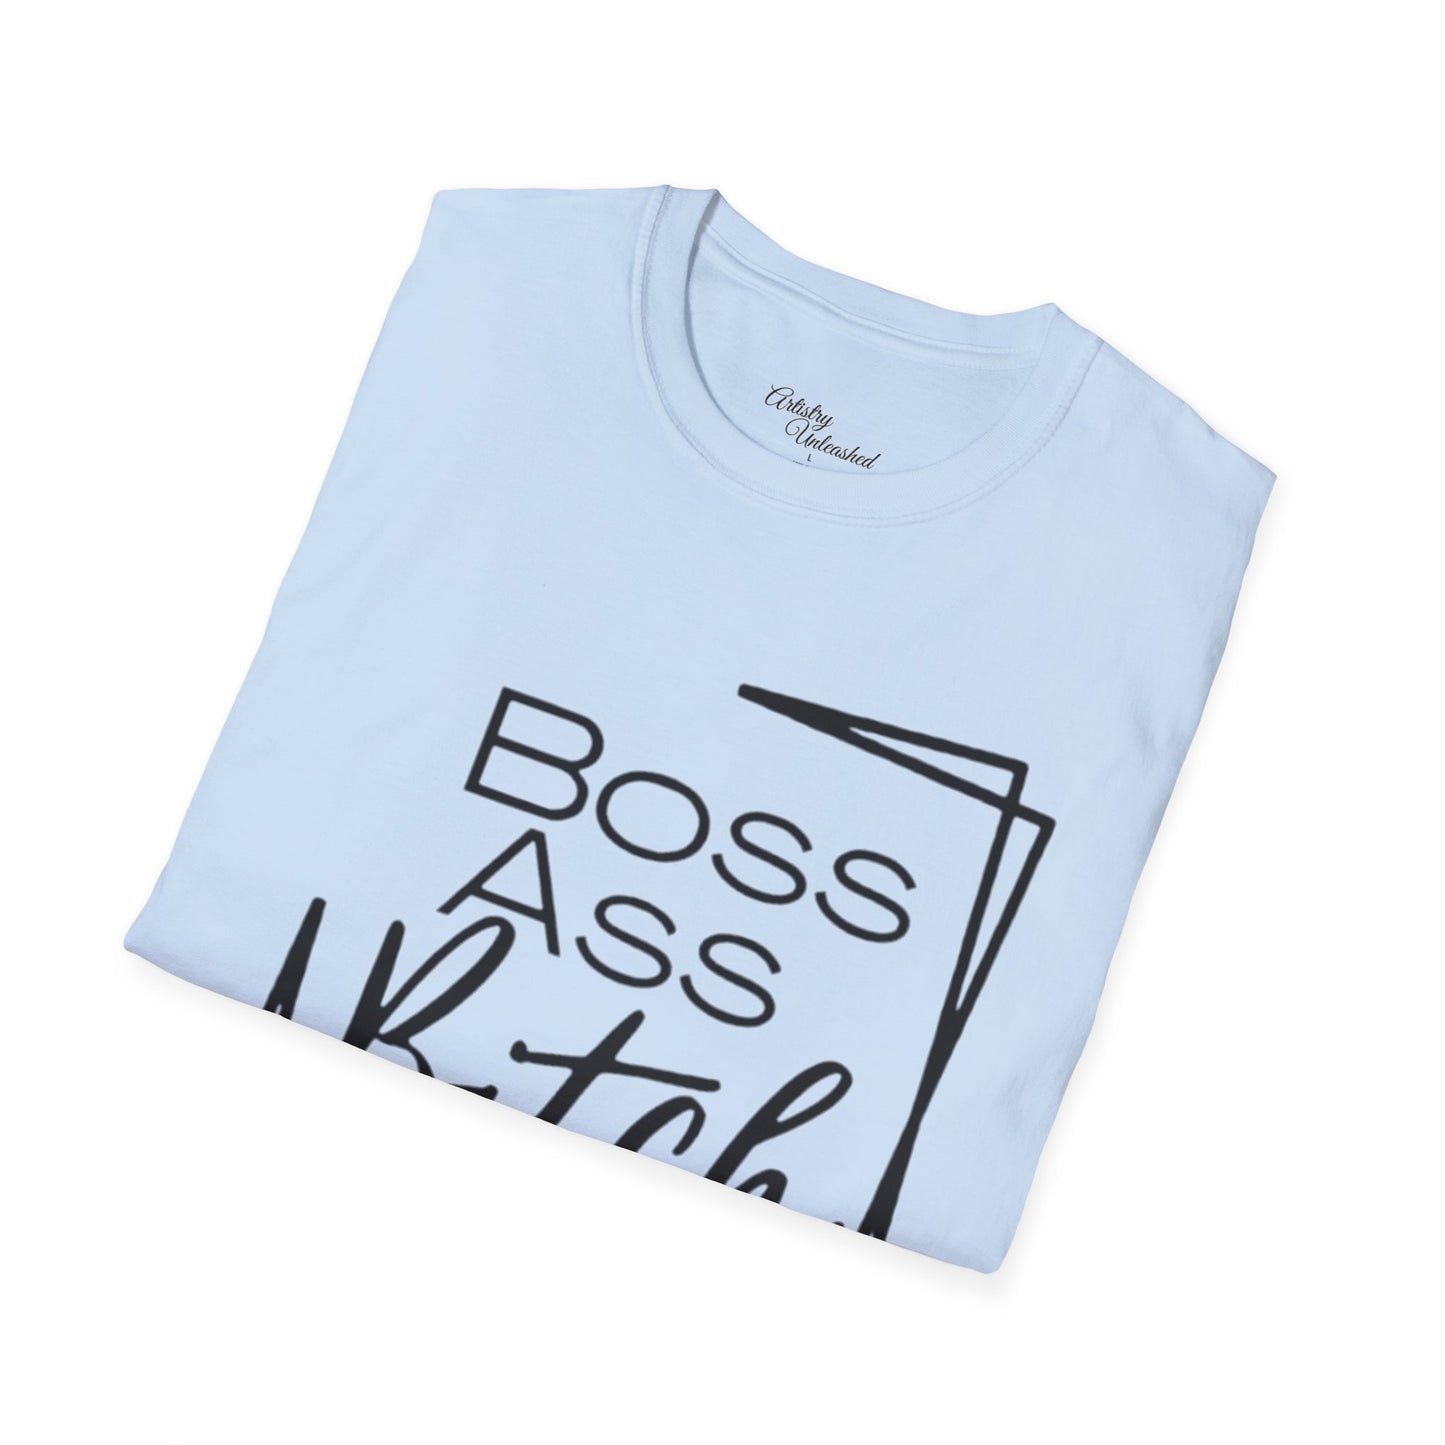 Boss B*tch Unisex Softstyle T-Shirt